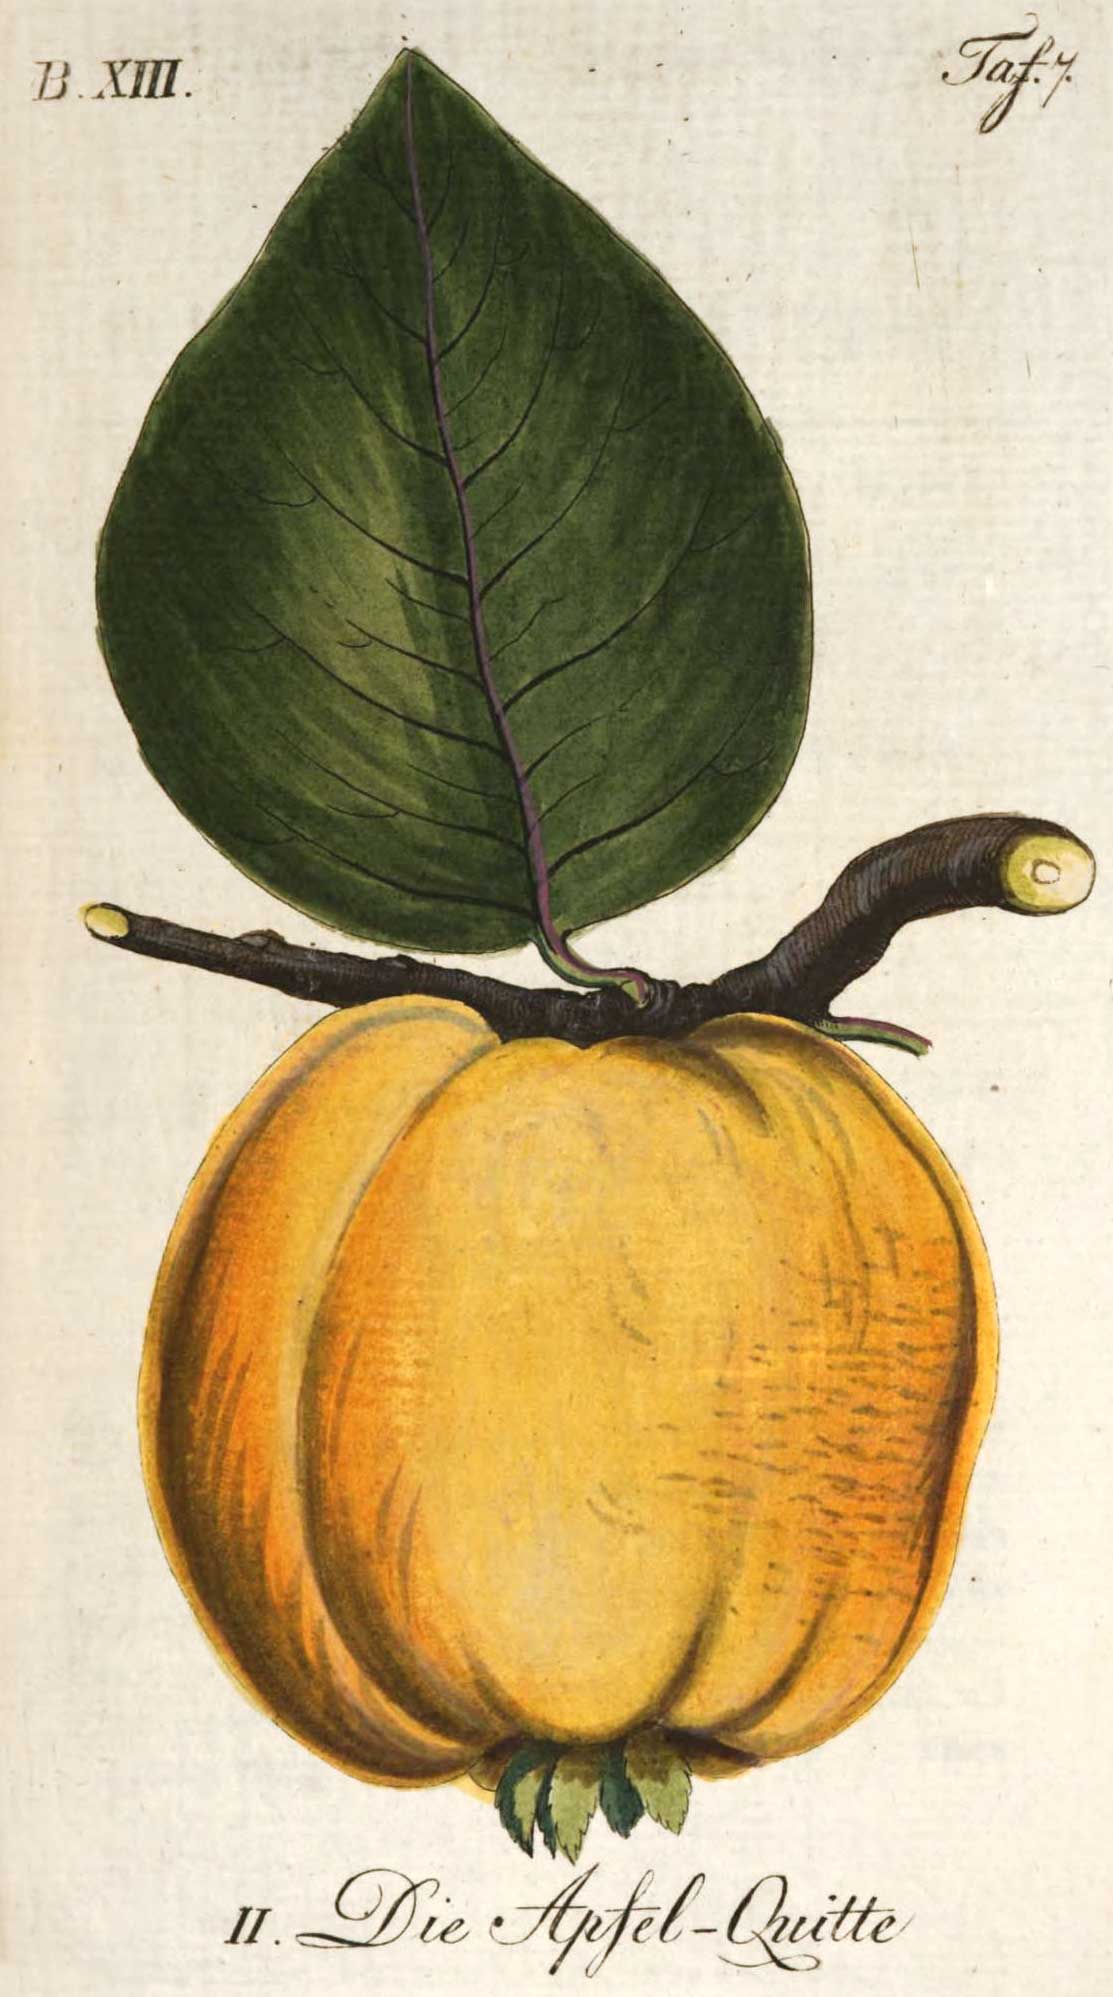 B. XIII. Tafel 7. II. Die Apfel-Quitte